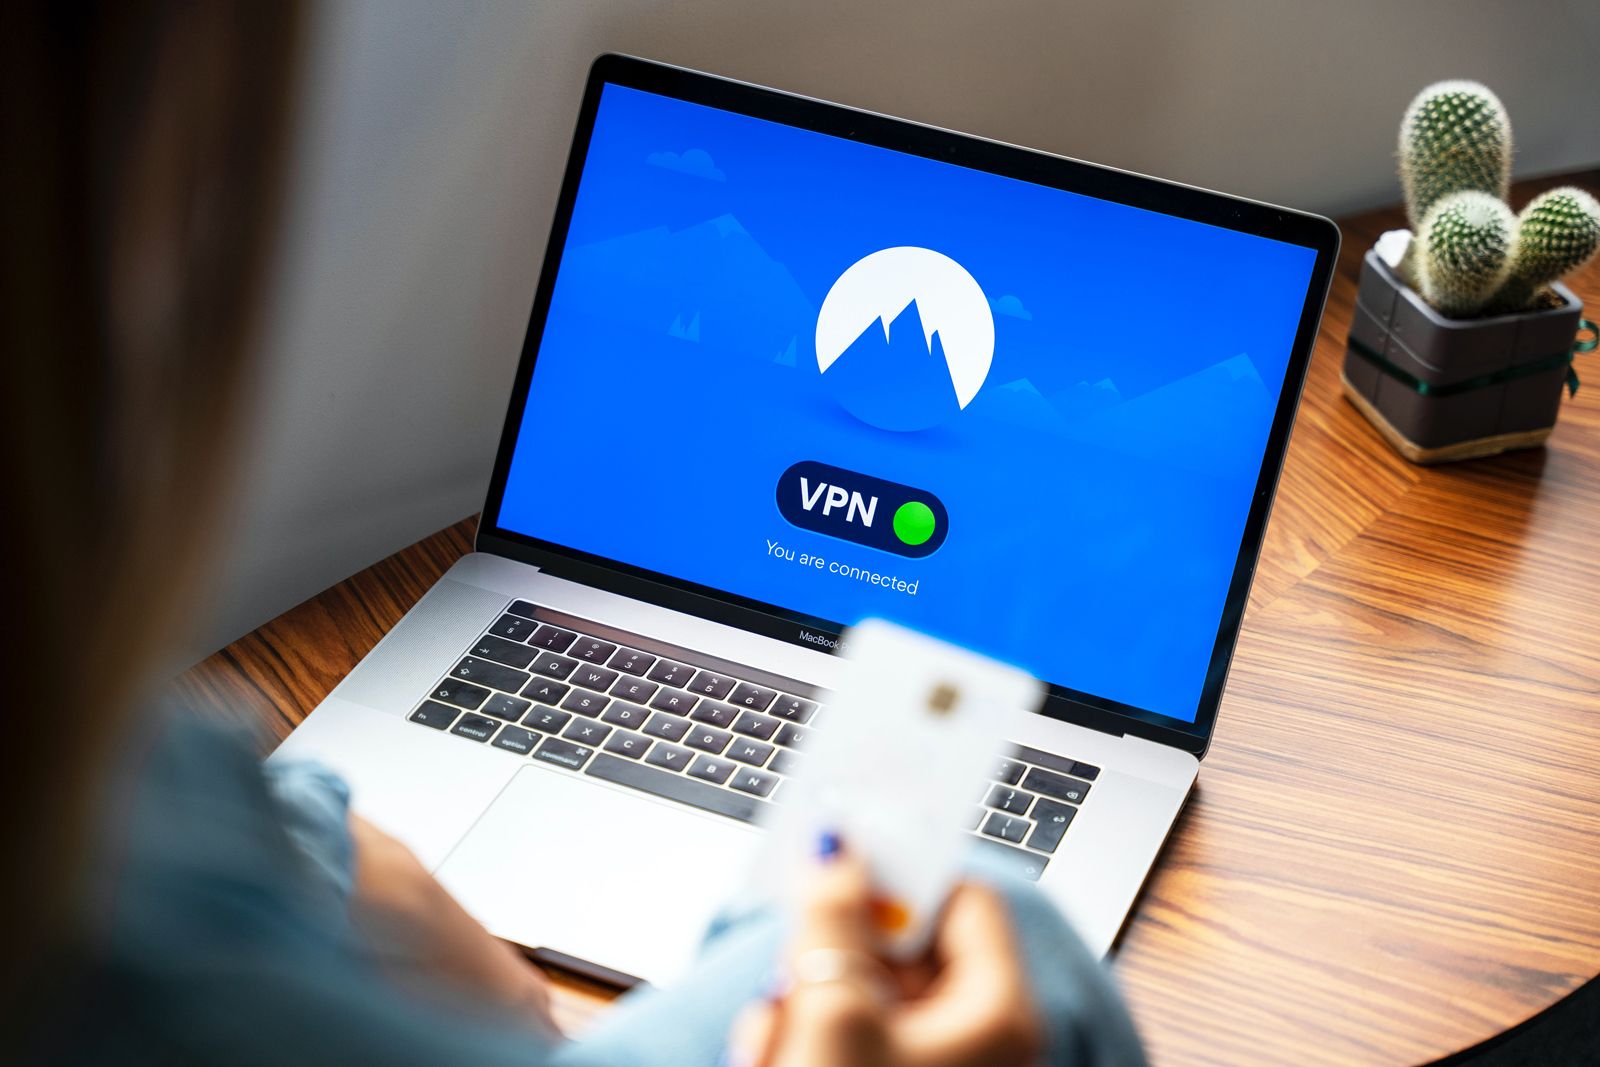 Best VPN services: Compare ExpressVPN, Surfshark, and more